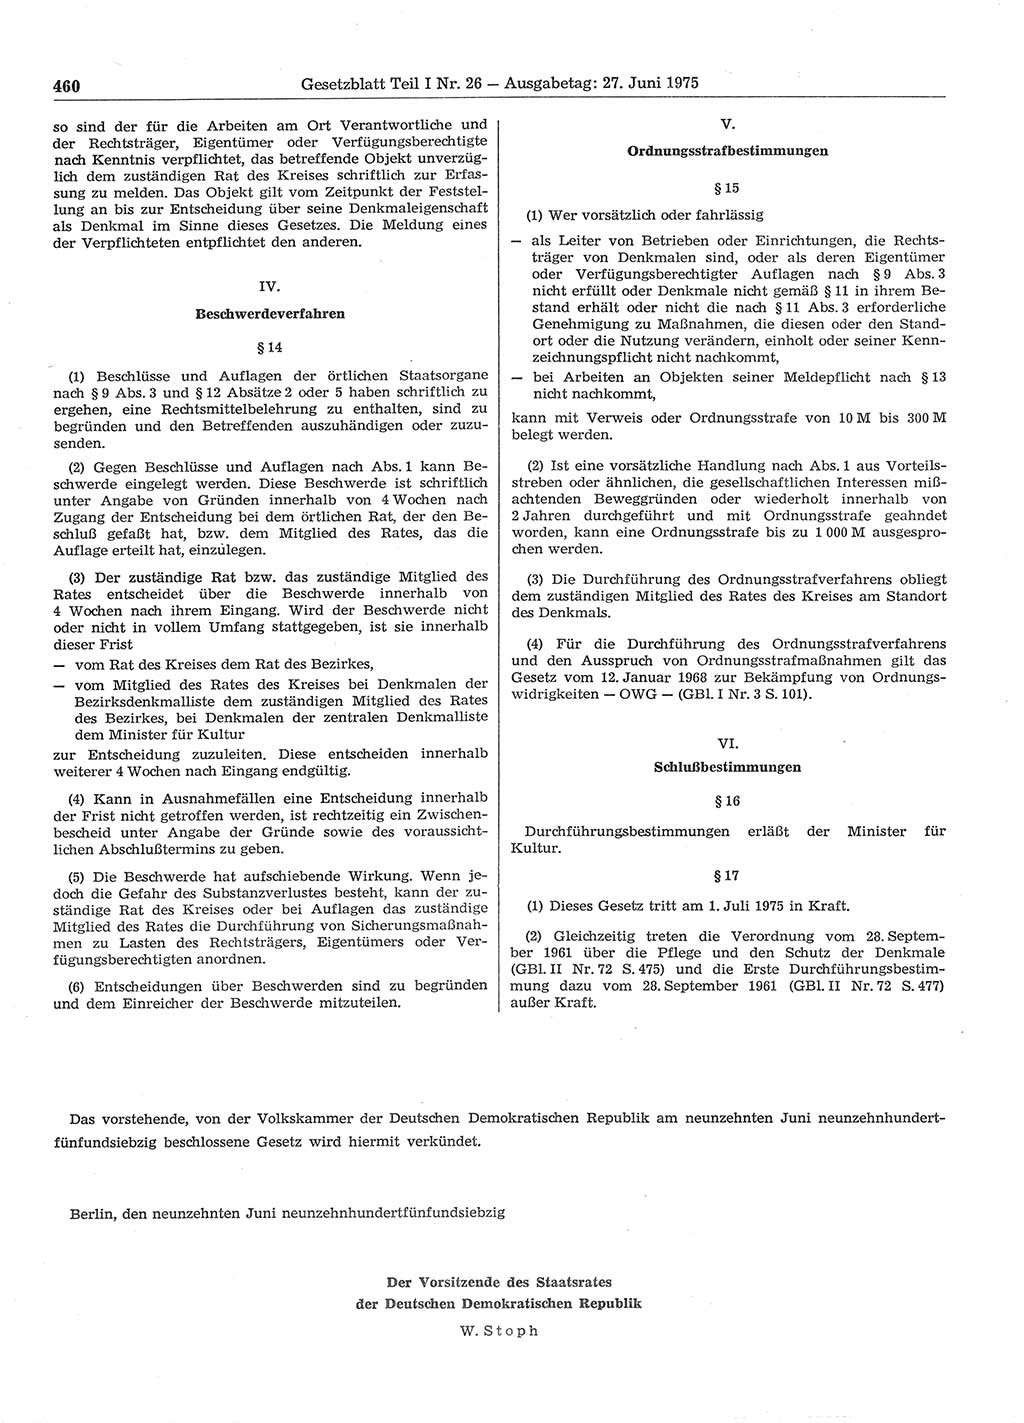 Gesetzblatt (GBl.) der Deutschen Demokratischen Republik (DDR) Teil Ⅰ 1975, Seite 460 (GBl. DDR Ⅰ 1975, S. 460)